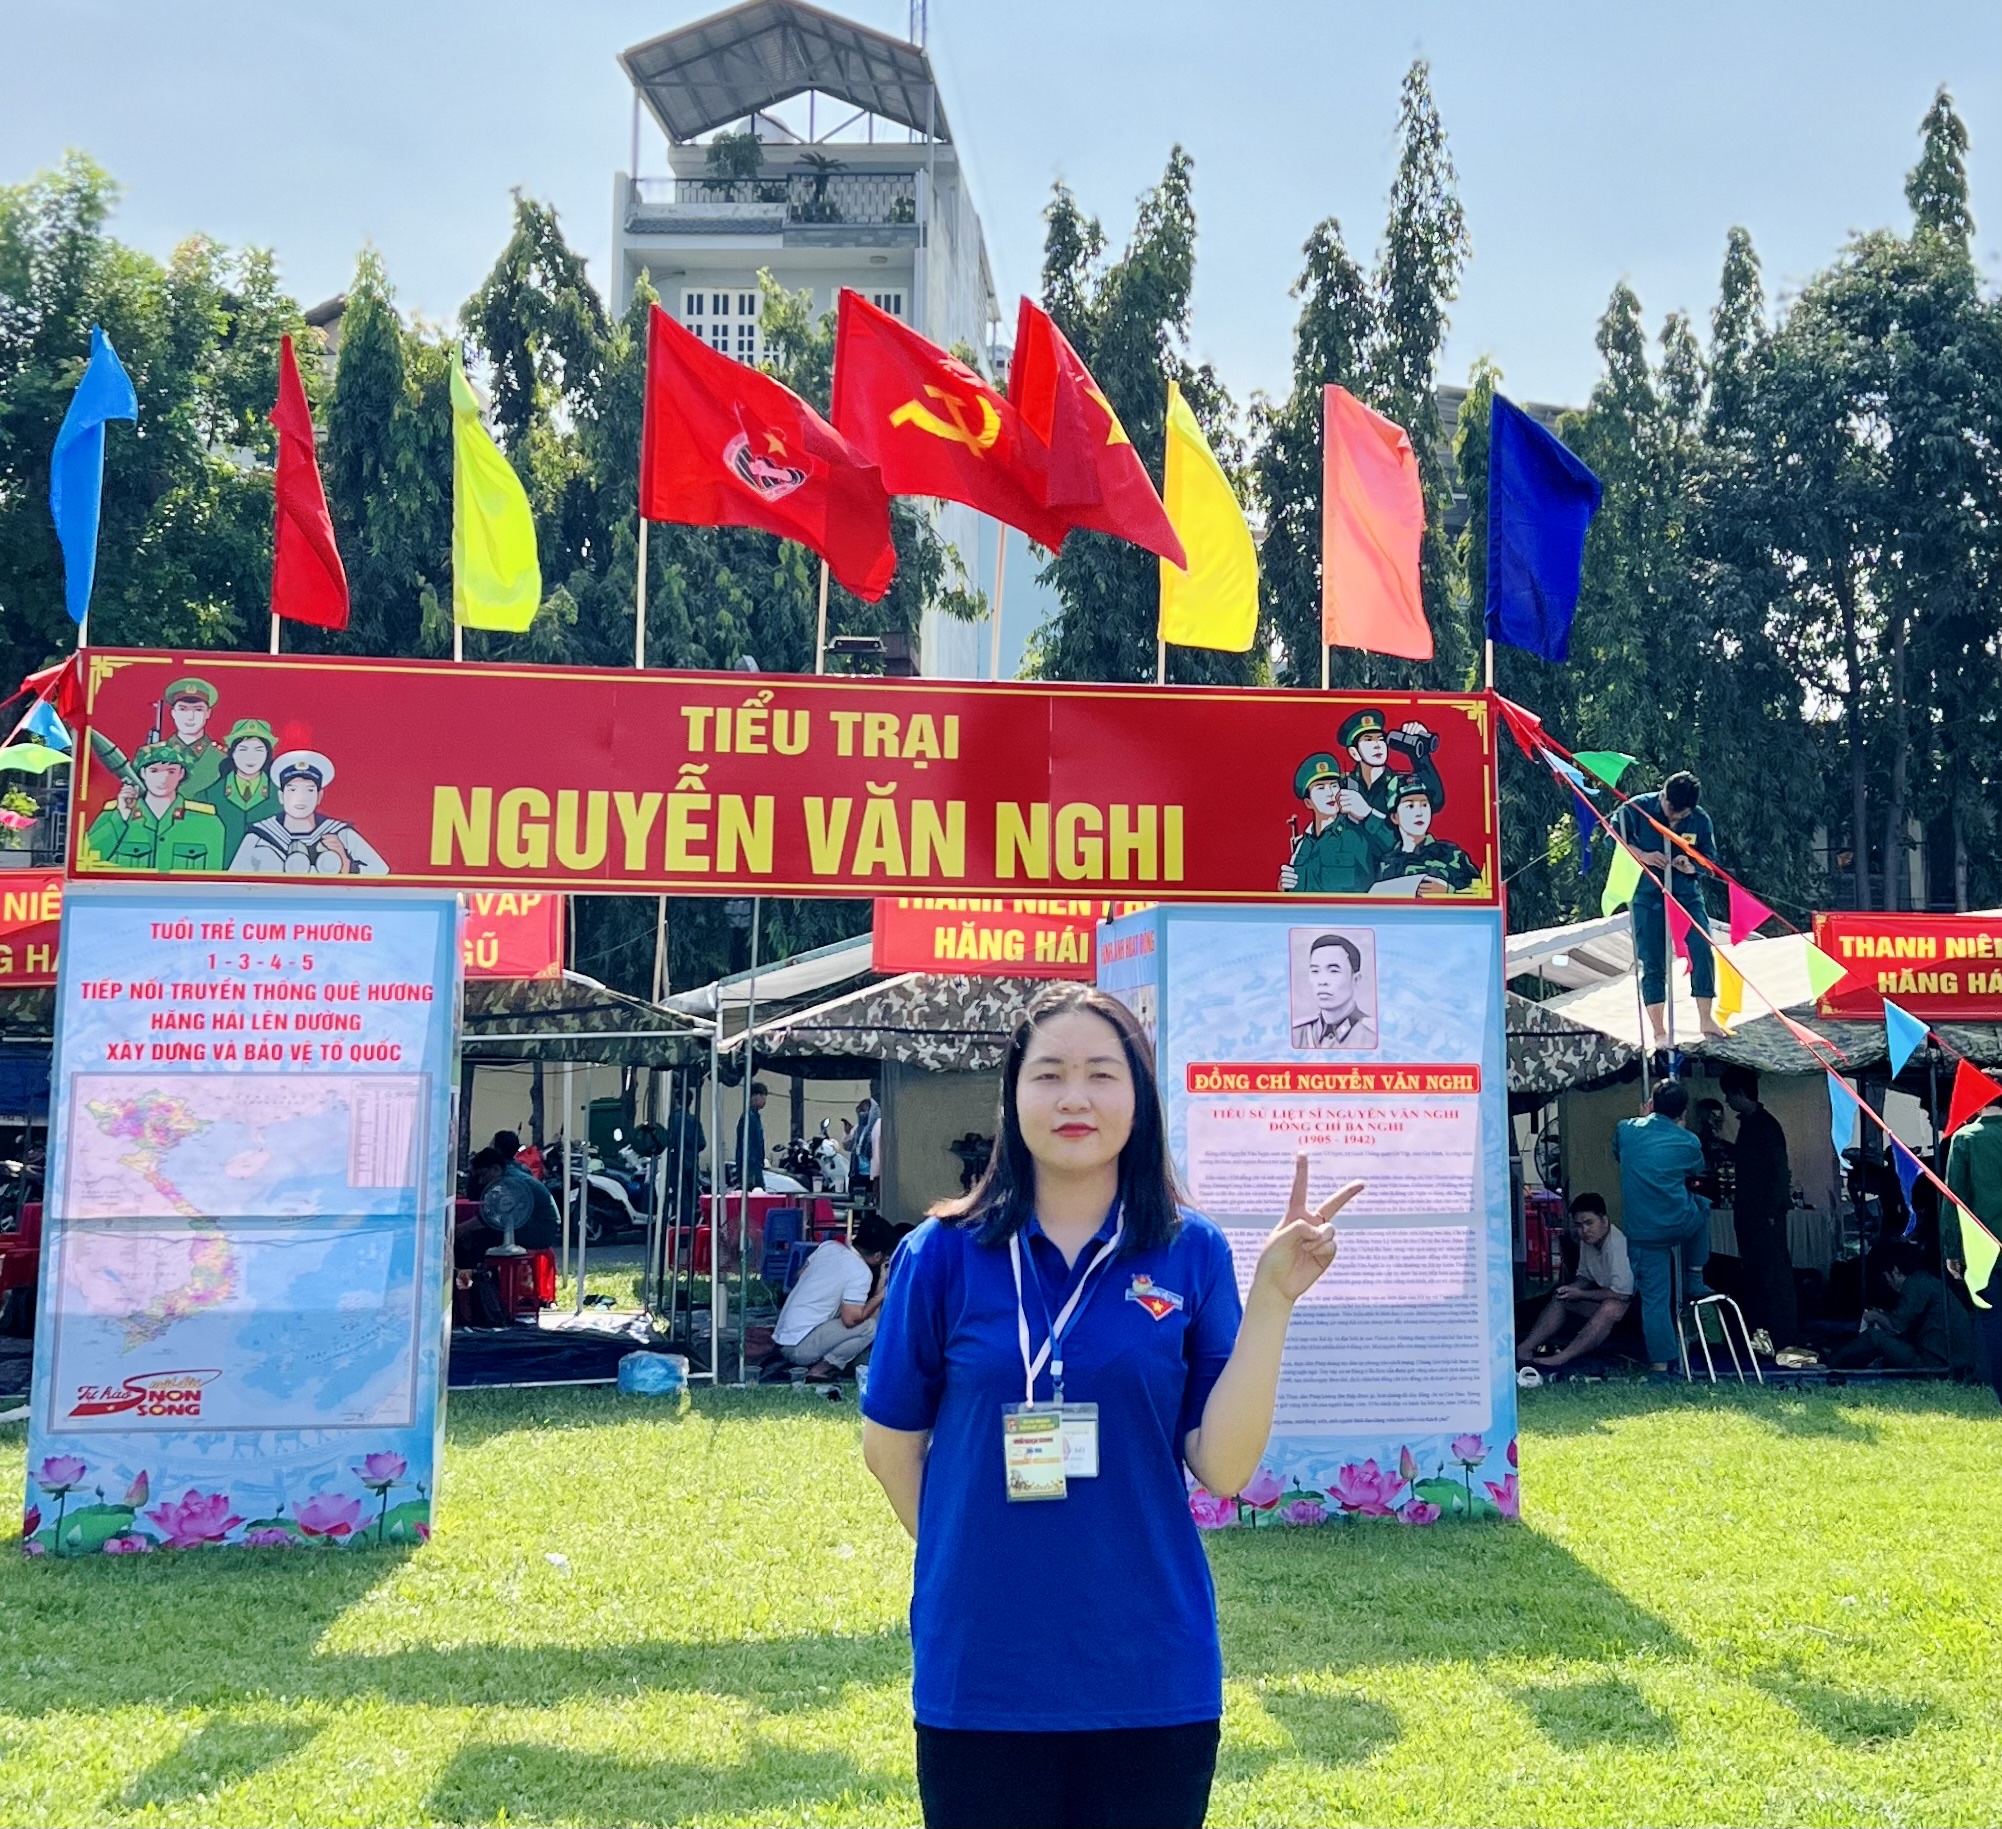 Gác ước mơ trở thành Dược sĩ, 2 cựu nữ sinh Trường ĐH Nguyễn Tất Thành viết đơn xin nhập ngũ